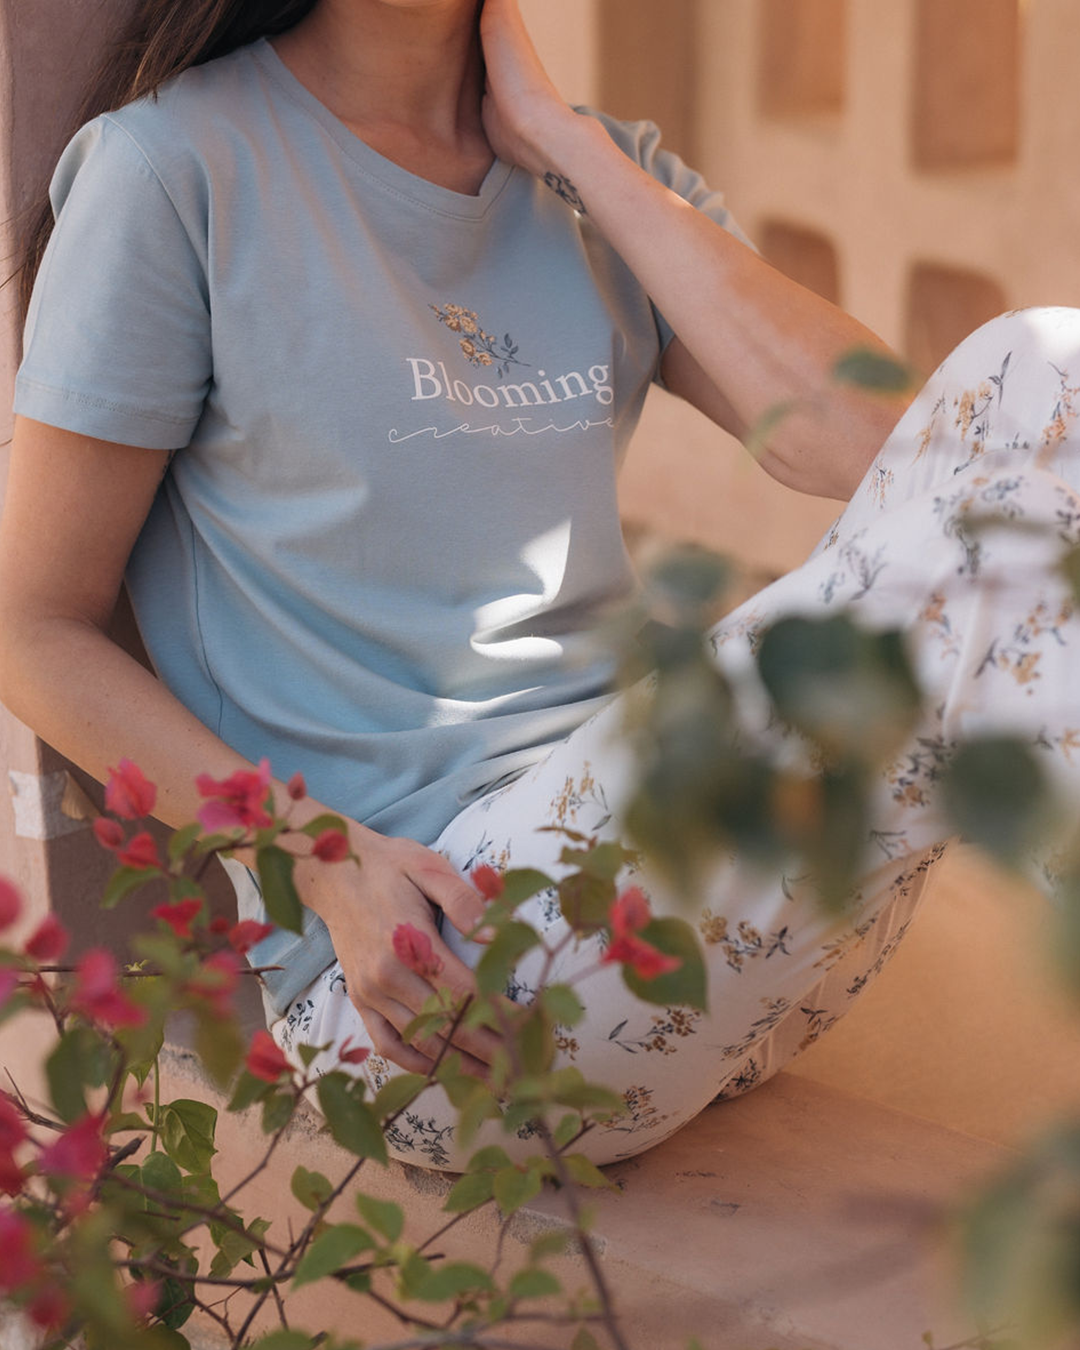 Bloom women's pajamas